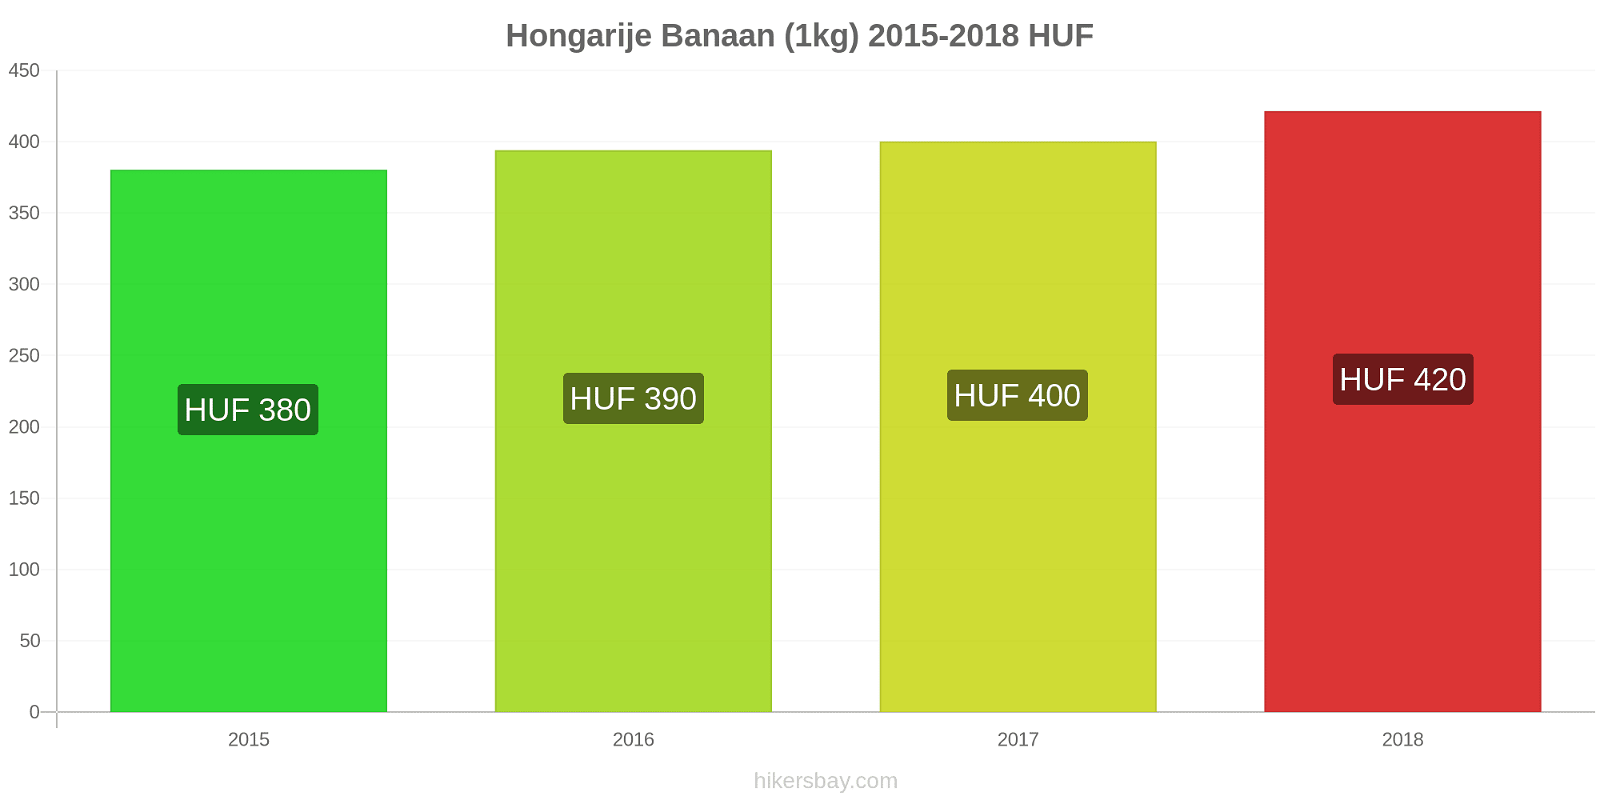 Hongarije prijswijzigingen Bananen (1kg) hikersbay.com